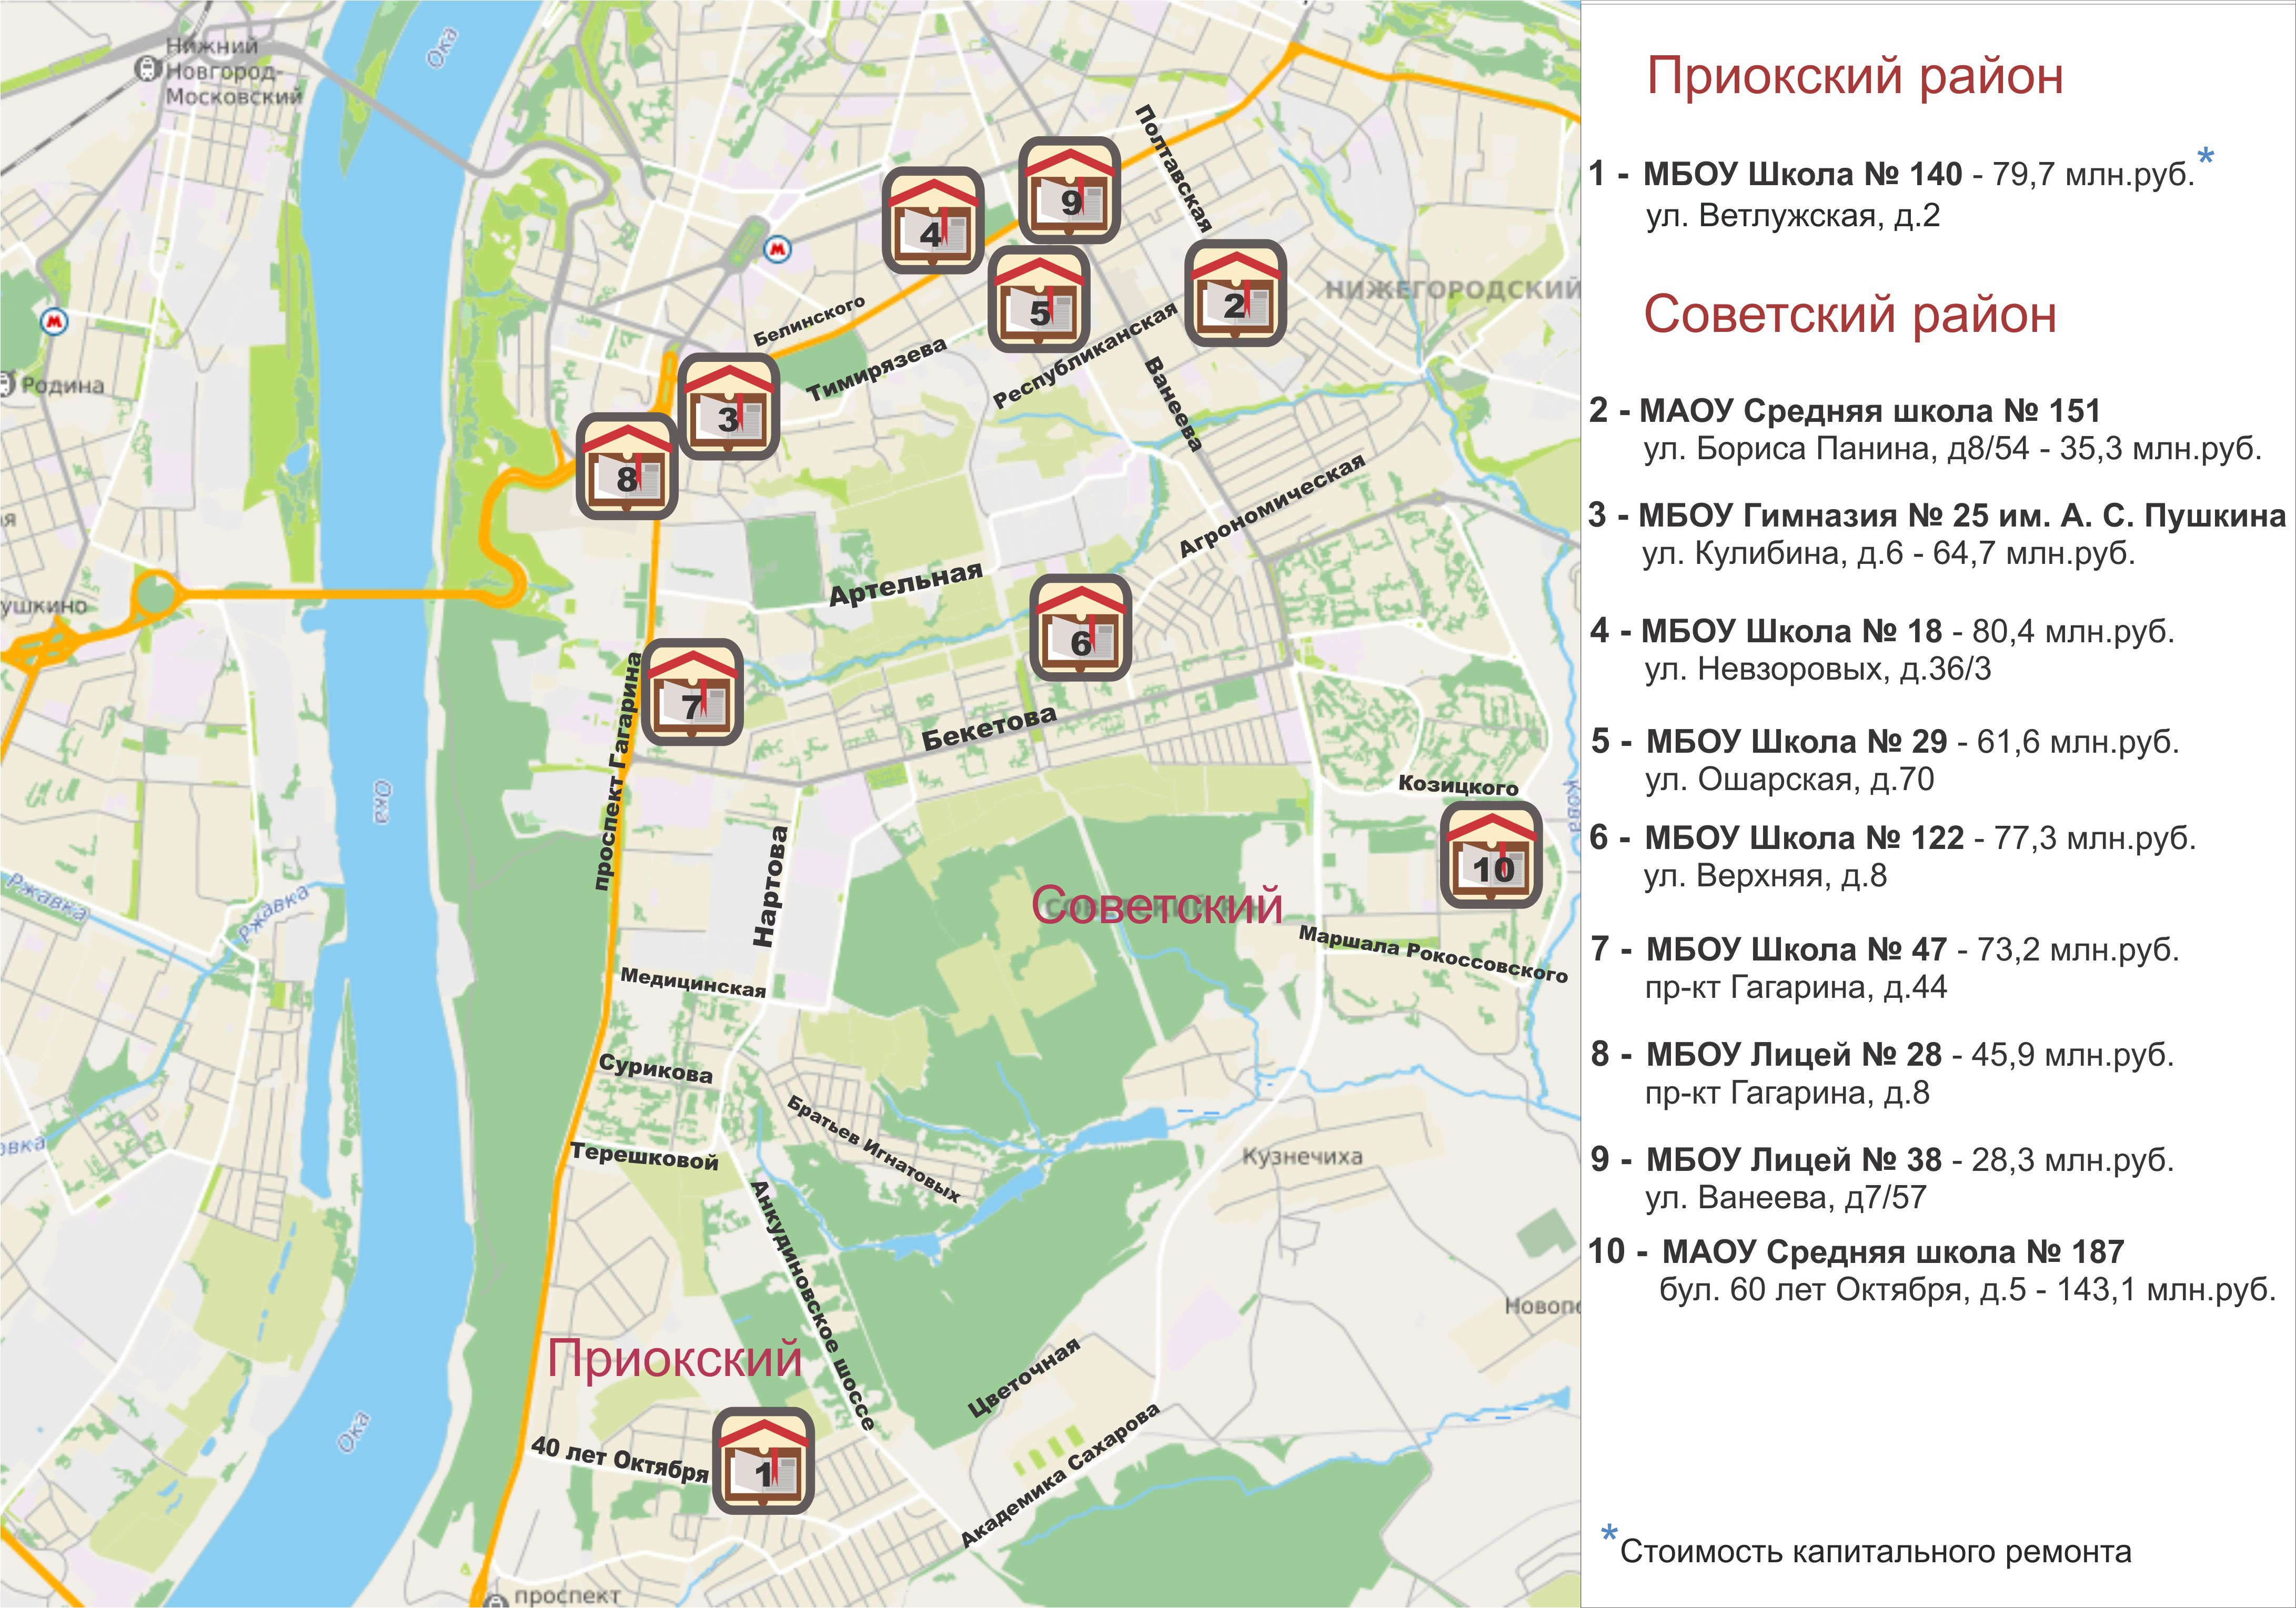 Приокский район Нижний Новгород на карте